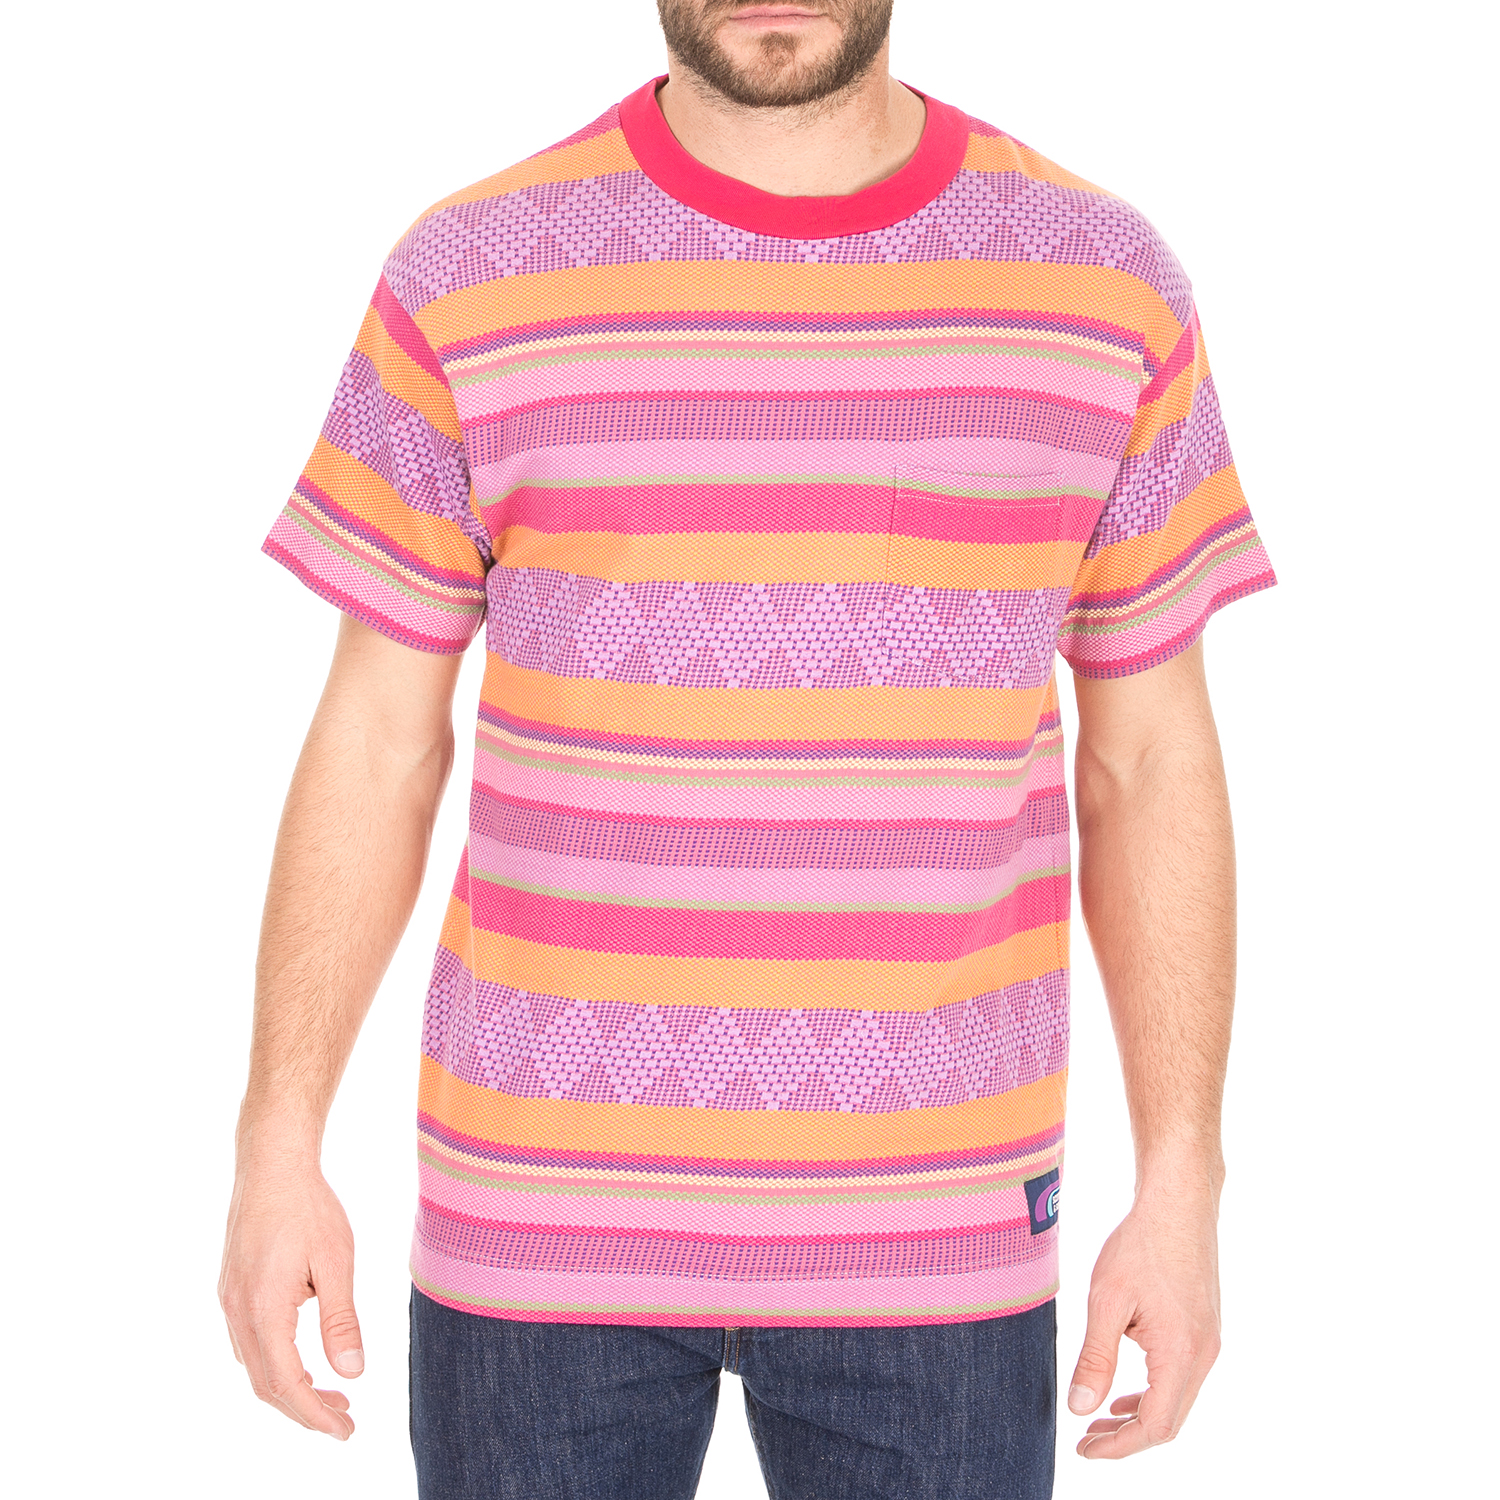 Ανδρικά/Ρούχα/Μπλούζες/Κοντομάνικες SCOTCH & SODA - Ανδρική μπλούζα SCOTCH & SODA ροζ πορτοκαλί